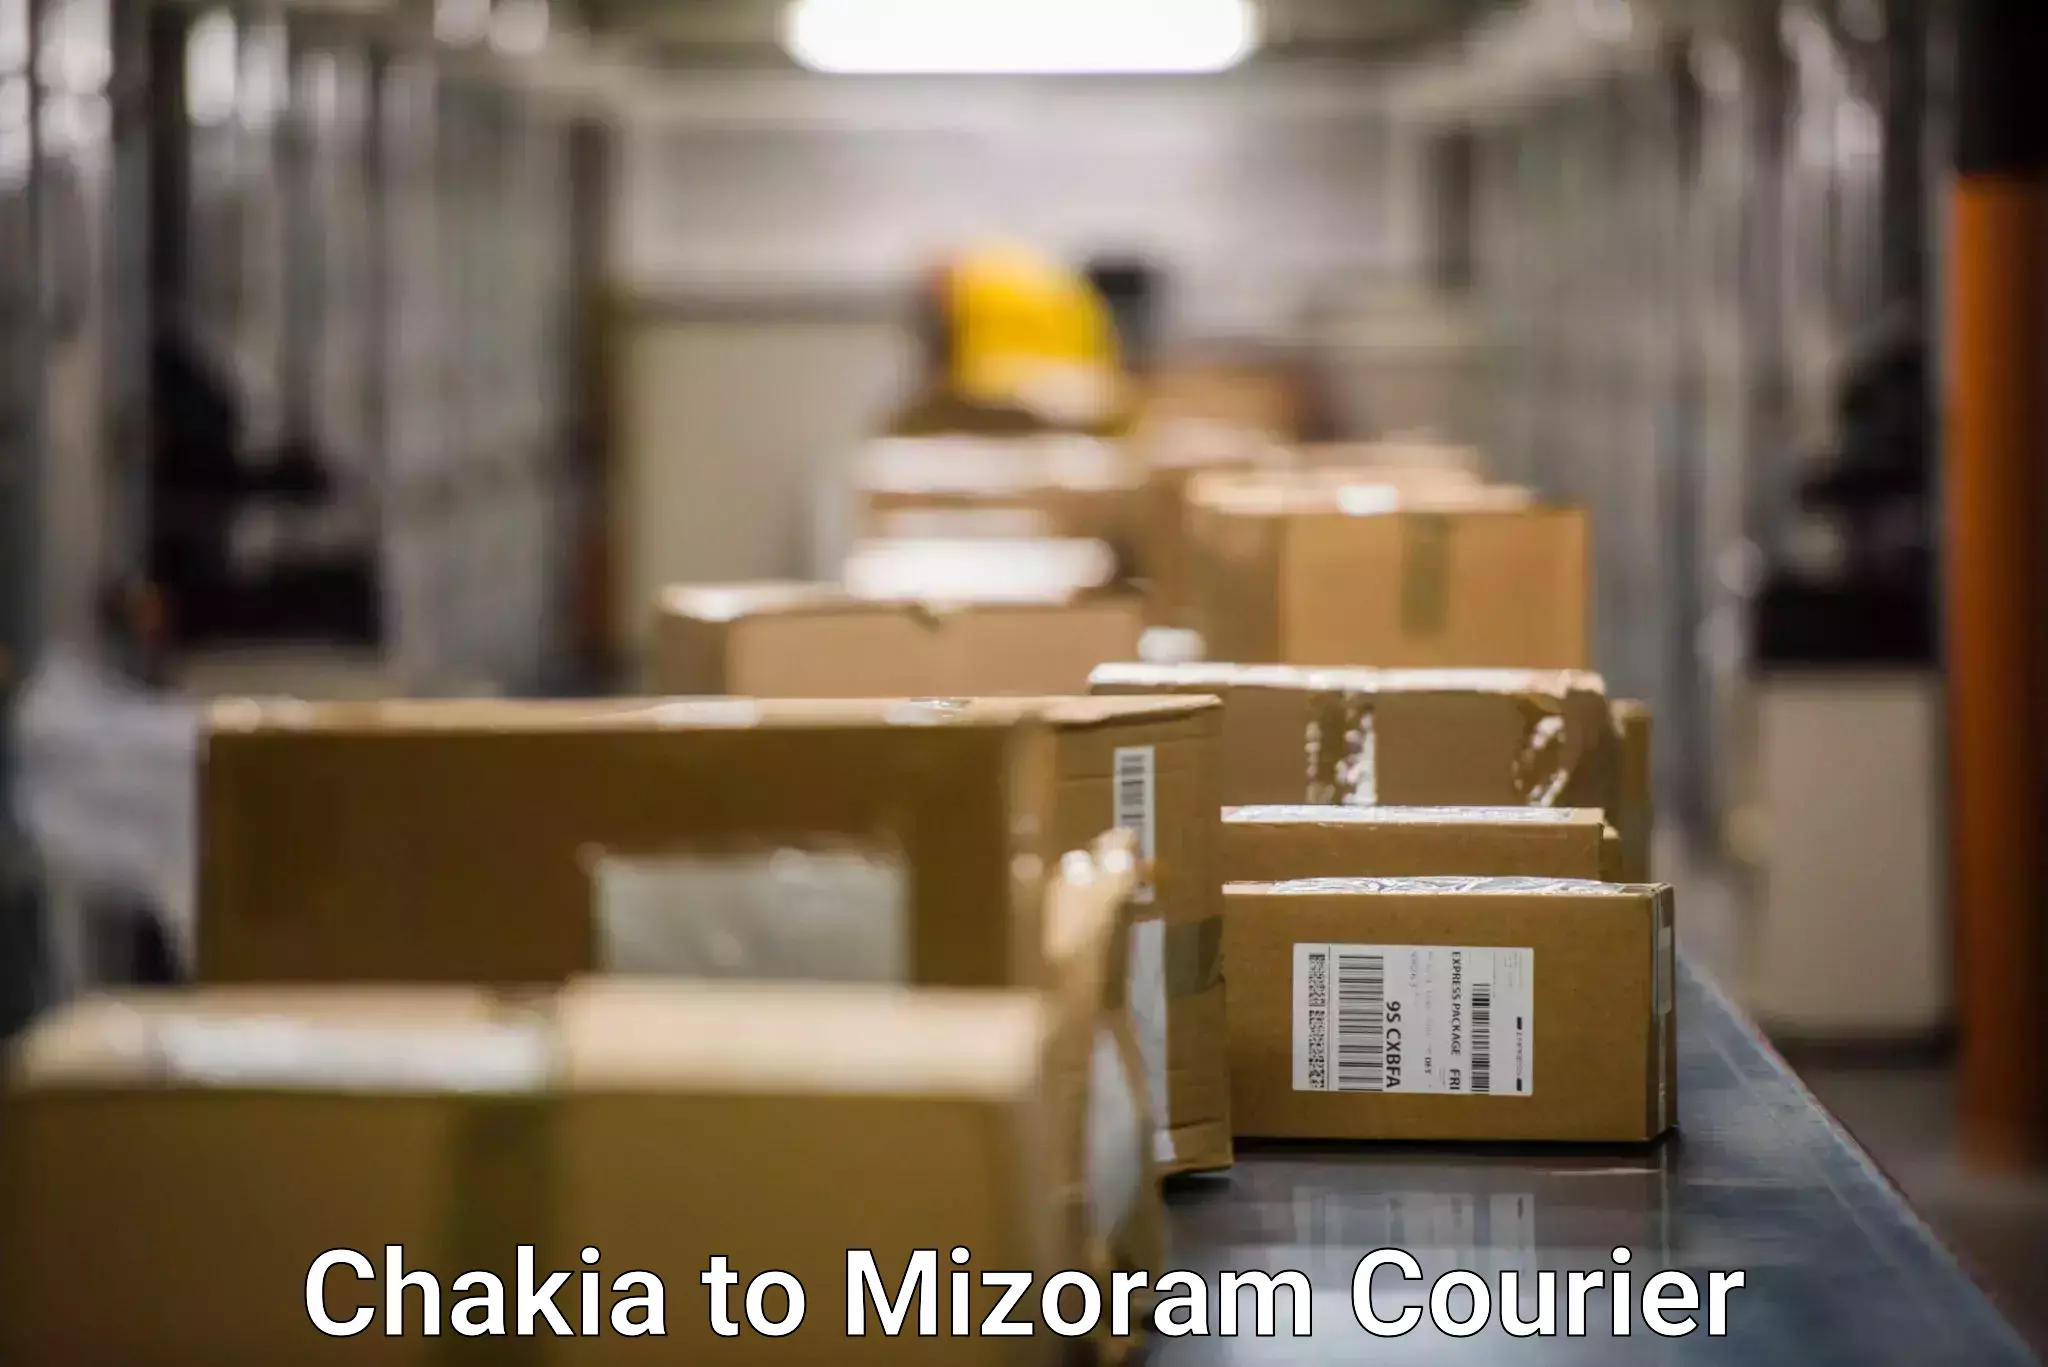 Fast delivery service Chakia to Aizawl